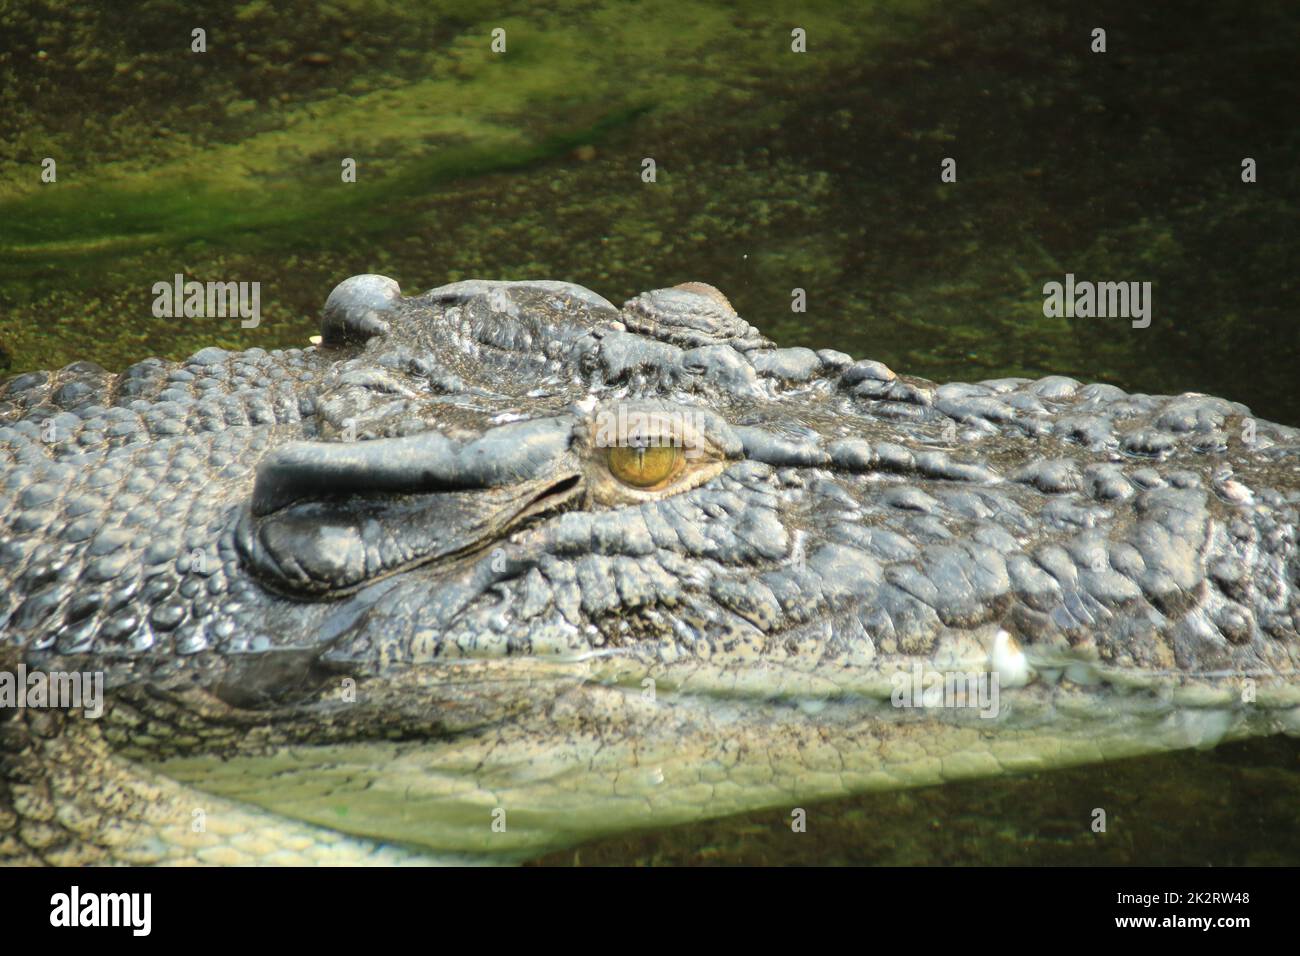 Kopf eines Krokodils von der Seite fotografiert Stockfoto